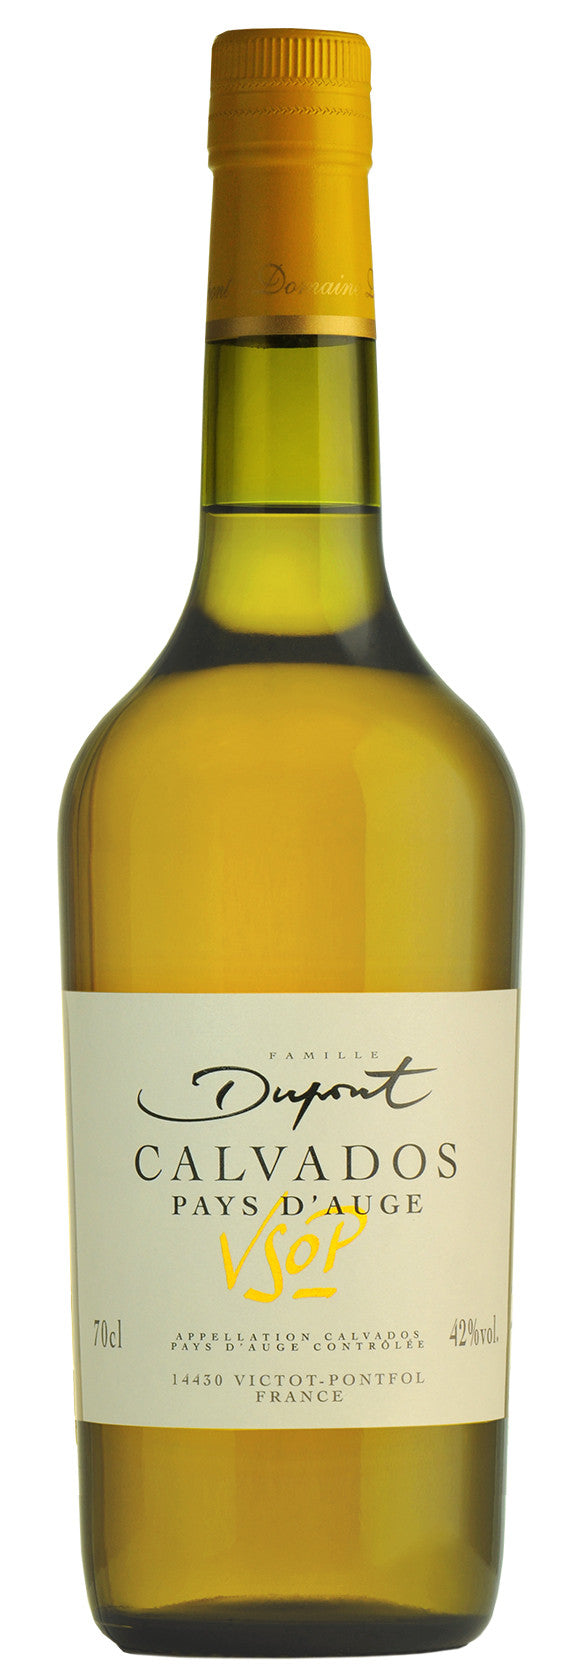 Bottle of Famille Dupont Calvados VSOP, Pays d'Auge, 42% - The Spirits Room